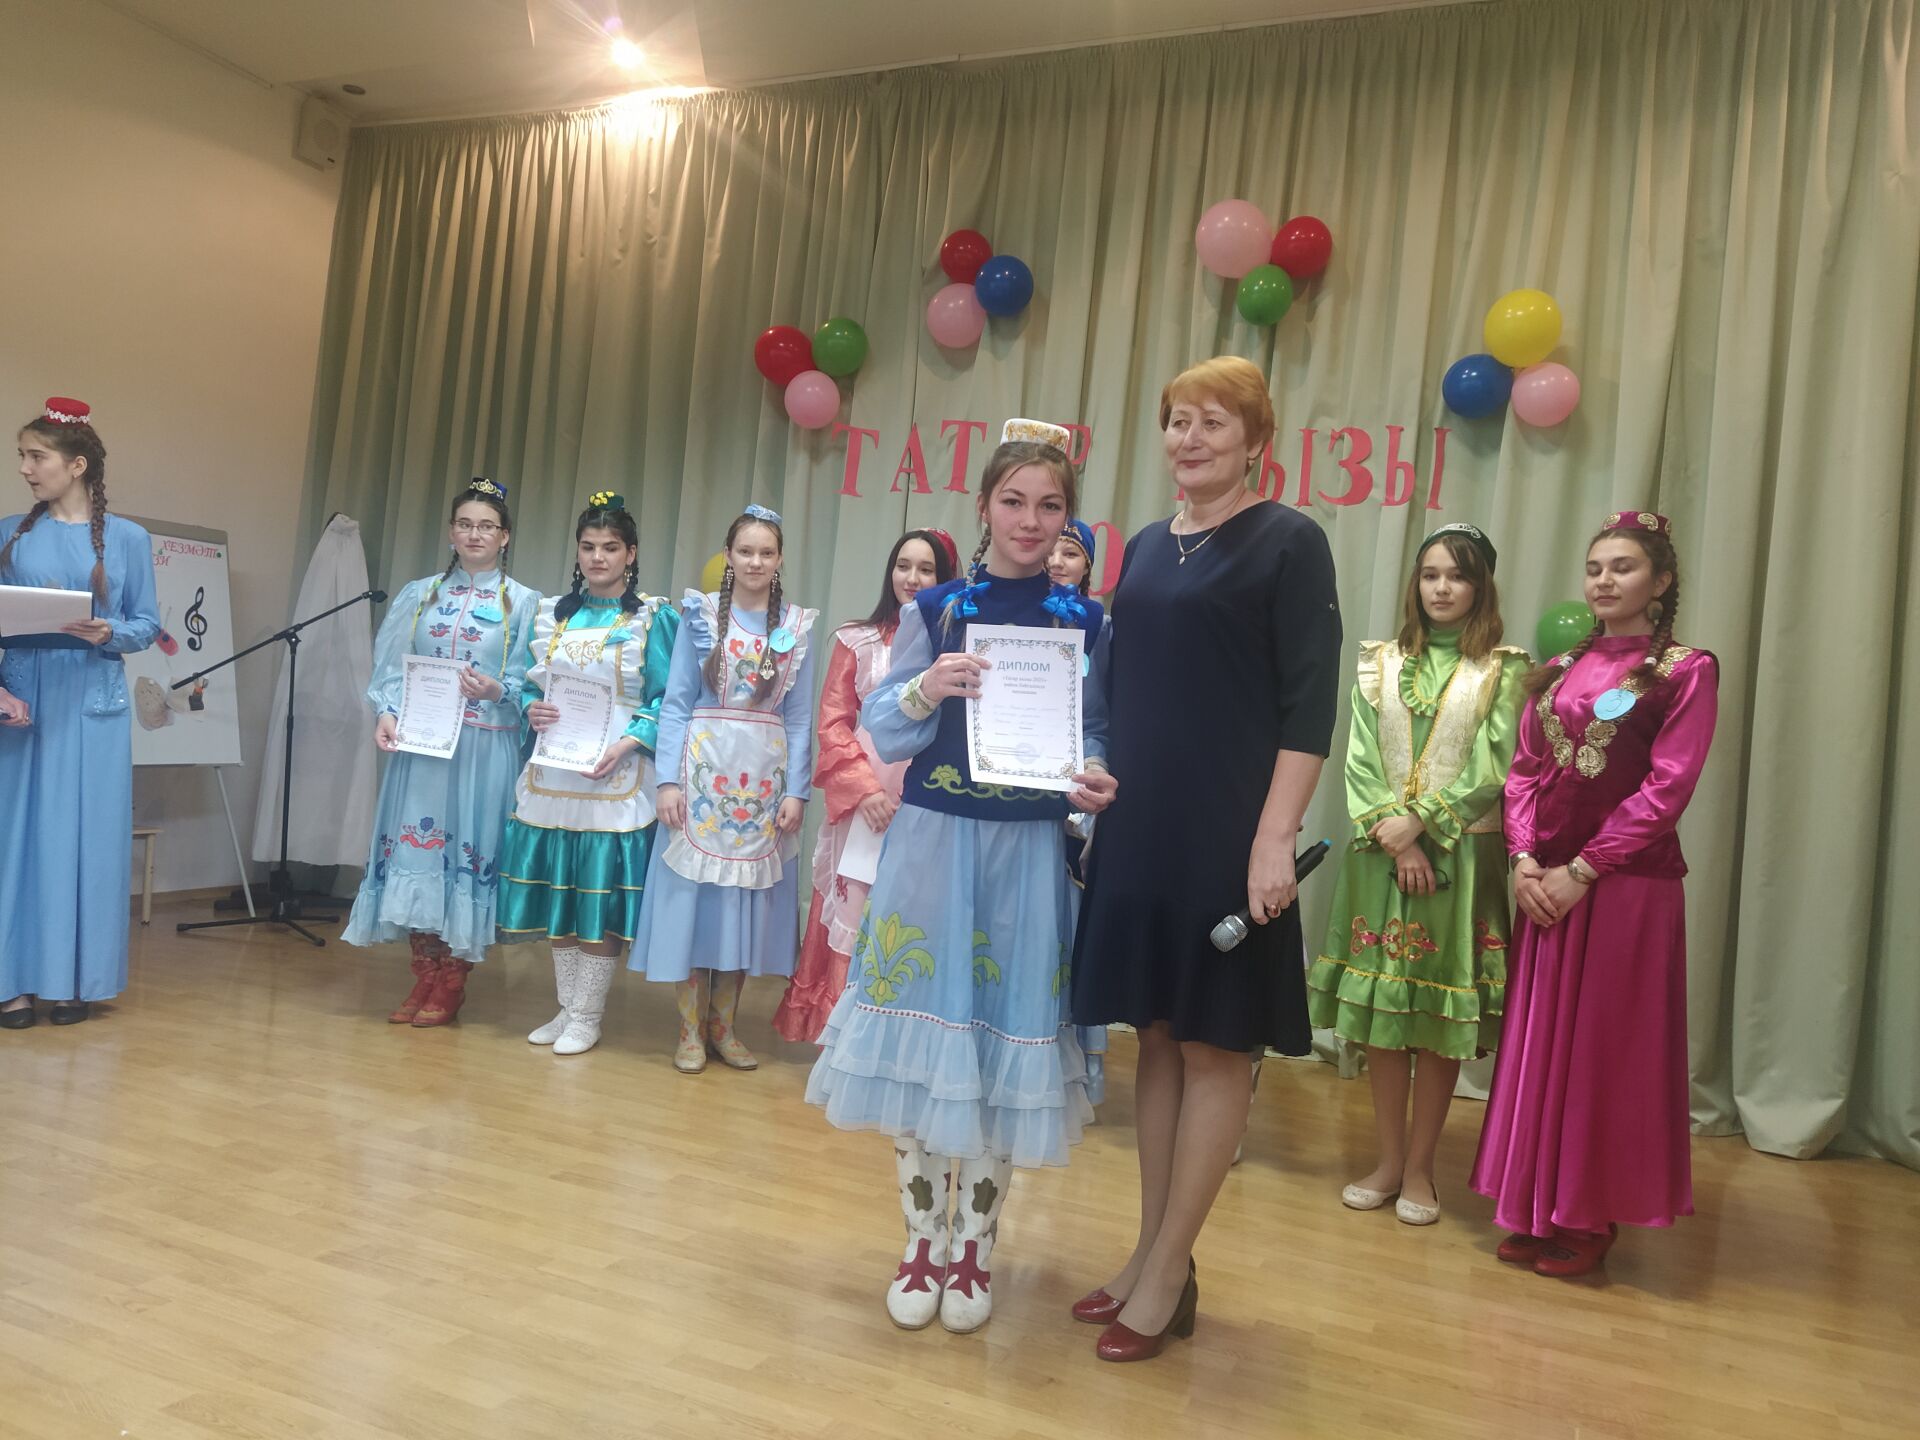 Районный конкурс «Татар кызы – 2021» прошёл сегодня в Камском Устье